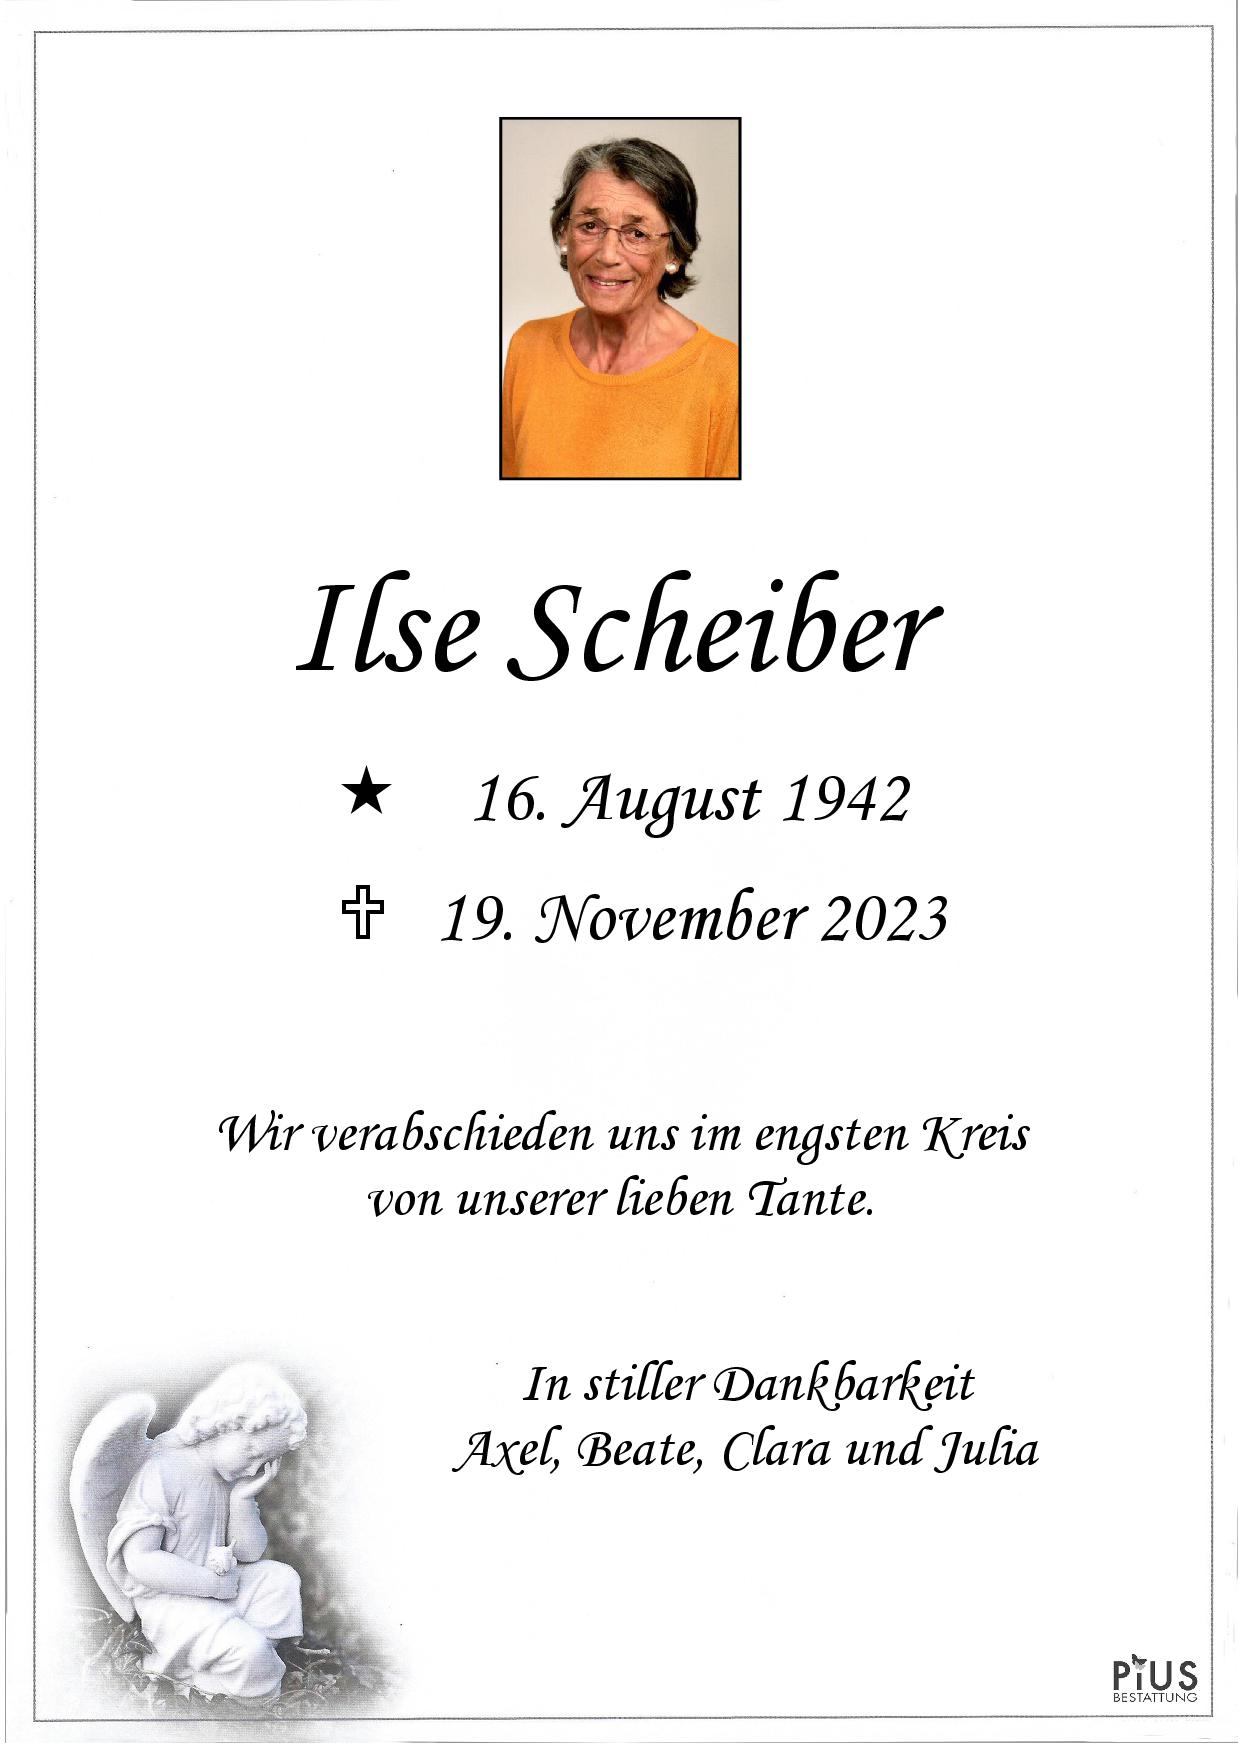 Ilse Scheiber